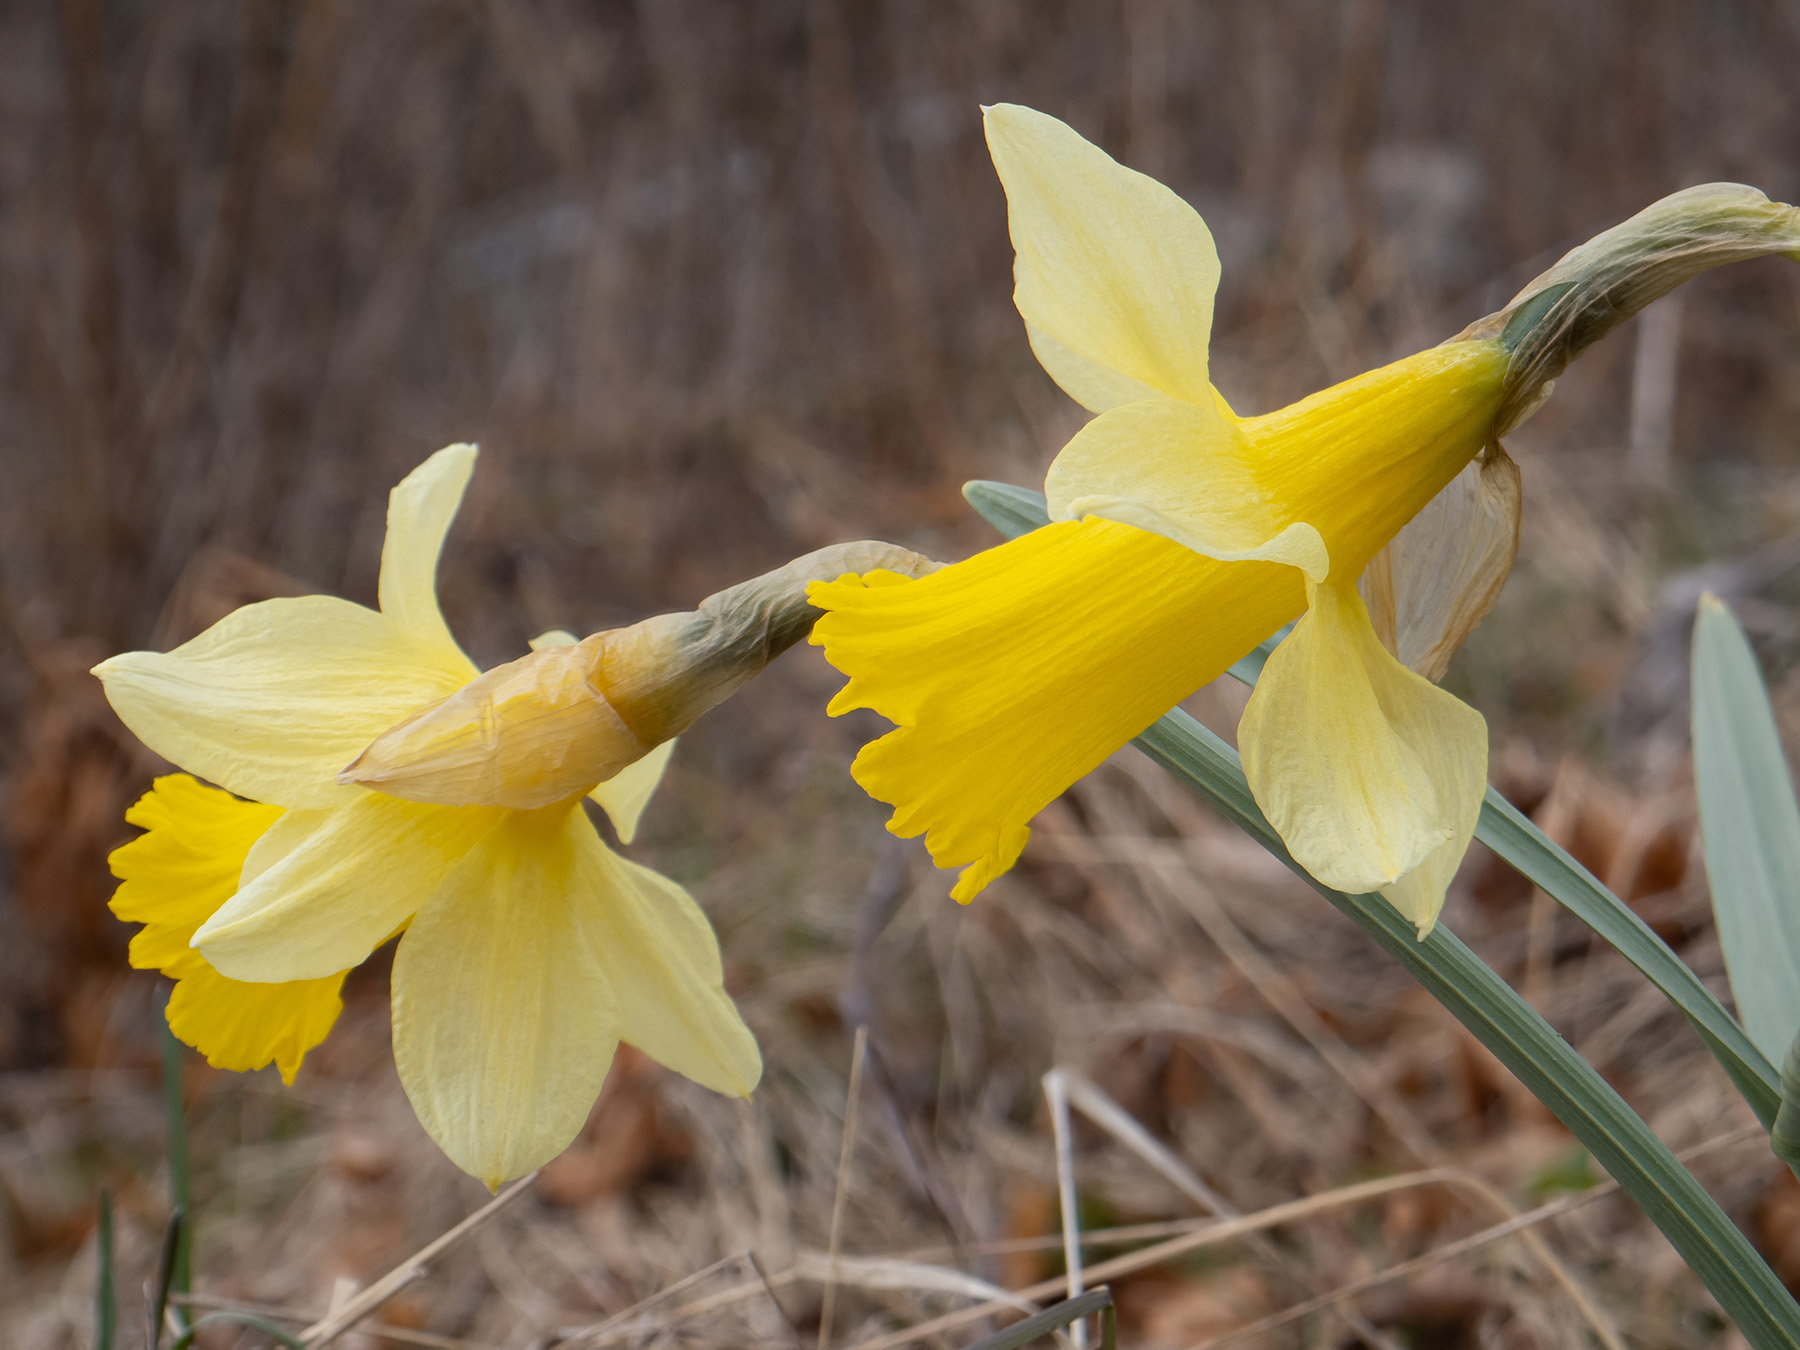 Нарцисс ложный (Narcissus pseudonarcissus)Нарцисс ложный (Narcissus pseudonarcissus) в природном парке G?rv?ln, Стокгольм, апрель 2020 года. Автор фото: Сутормина Марина